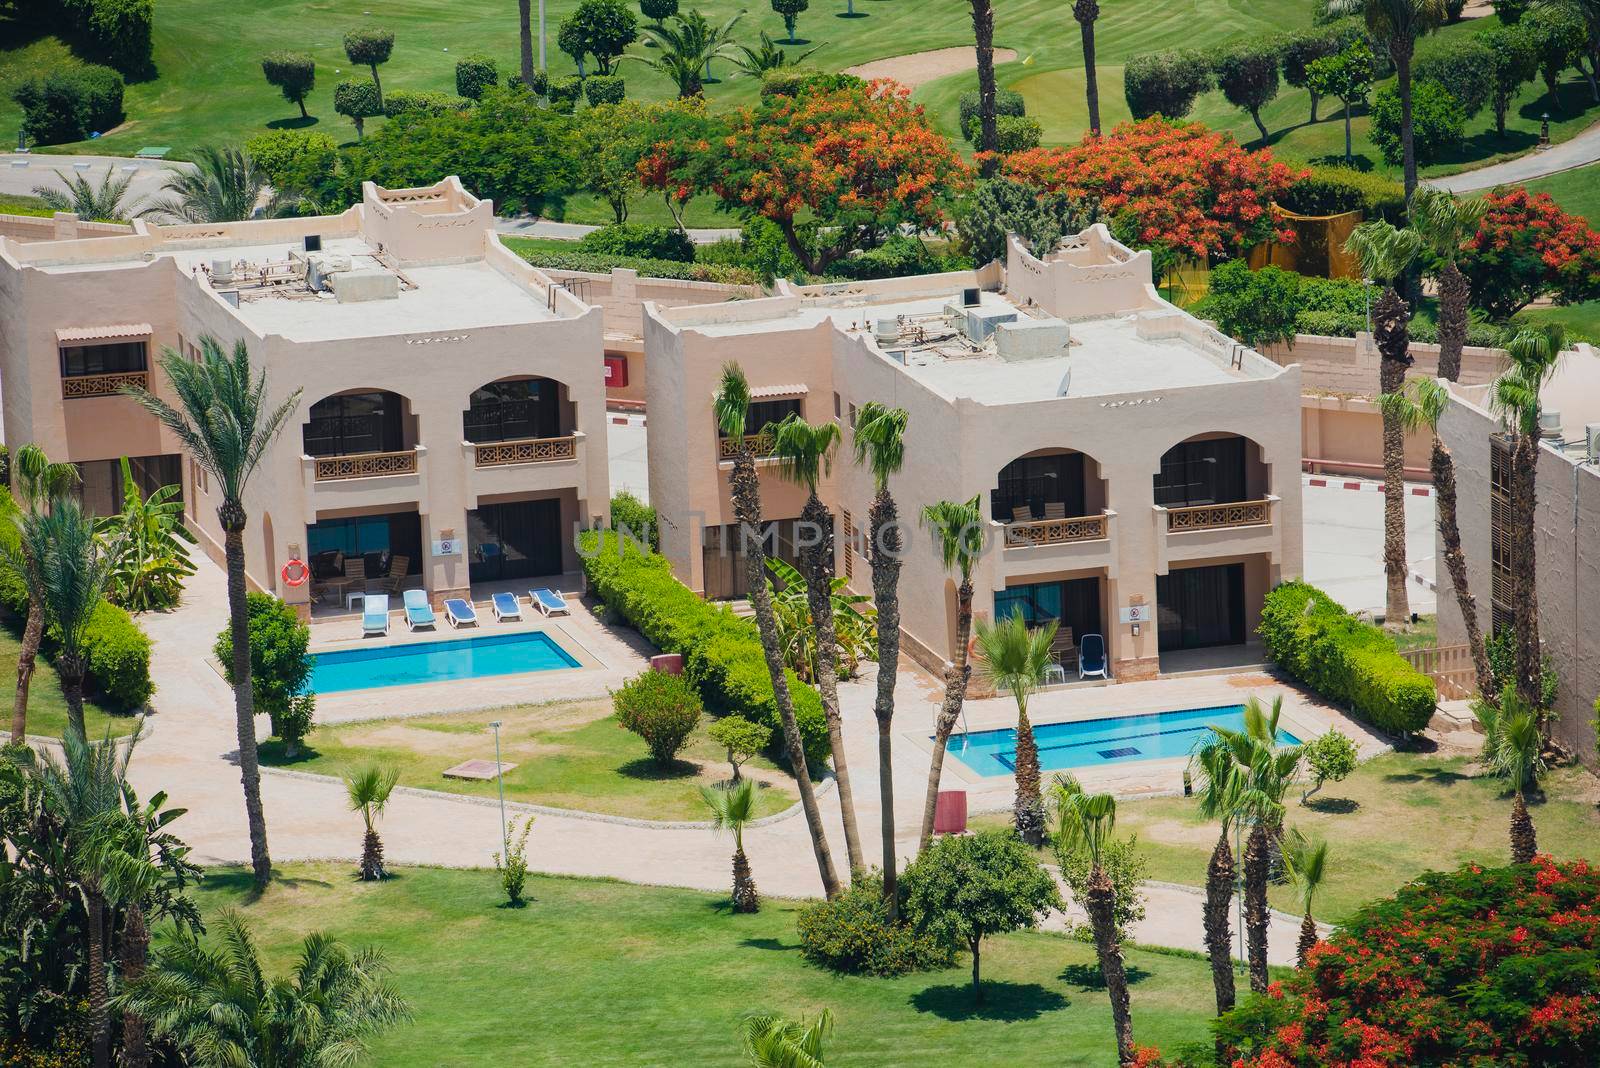 Aerial view of holiday villas in luxury hotel resort by paulvinten